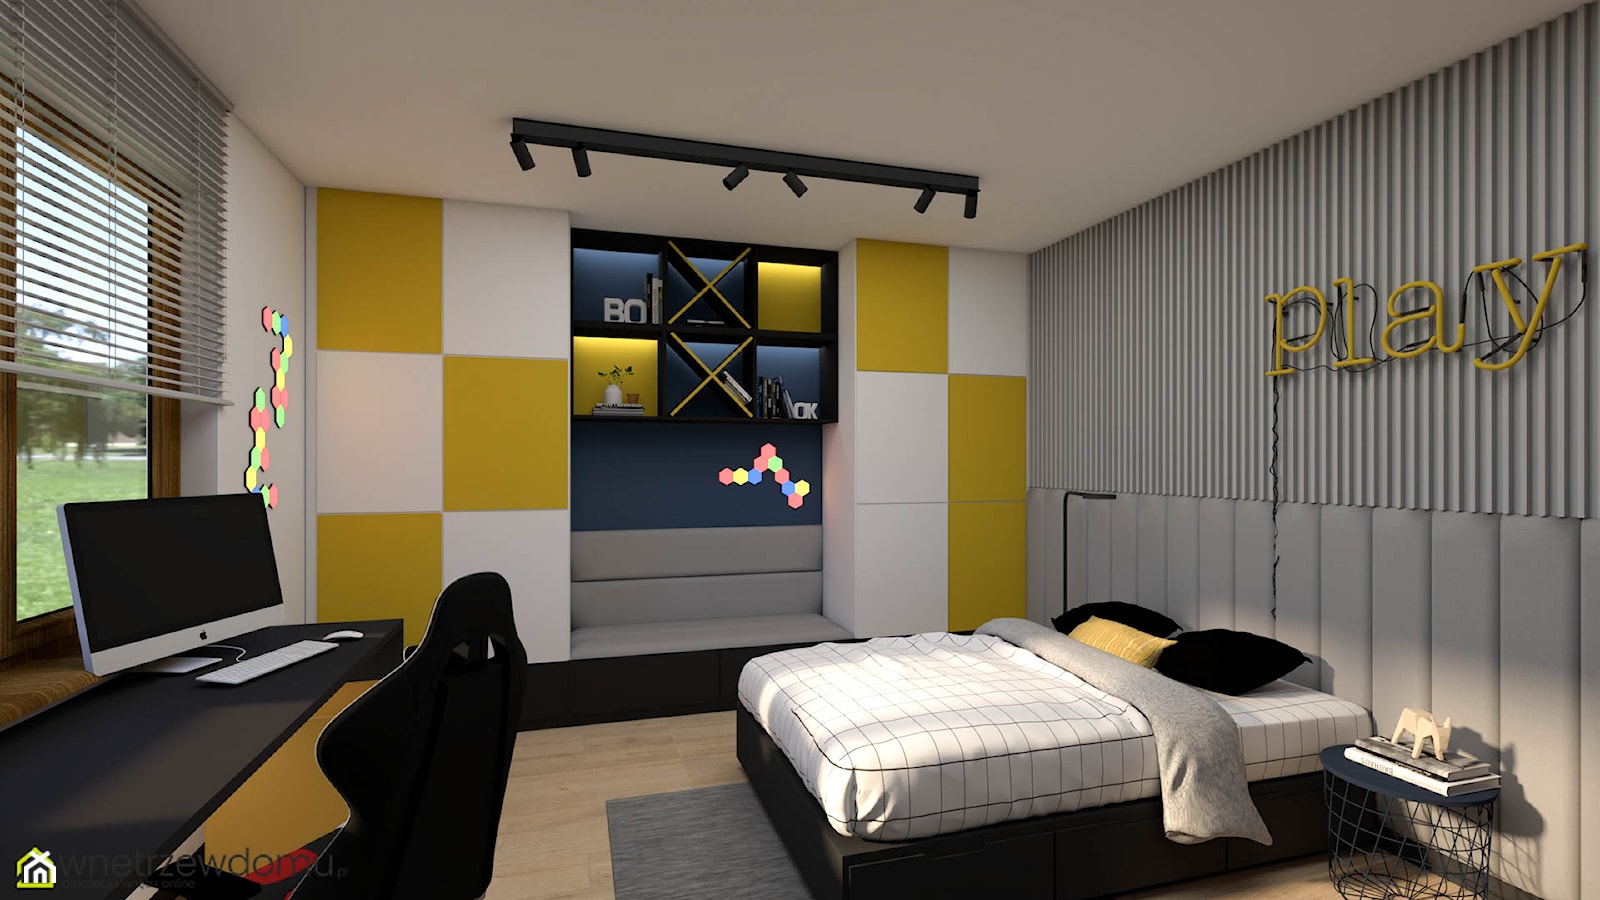 Pokój dla nastolatka w połączeniu granatu i żółtego - zdjęcie od wnetrzewdomu - Homebook